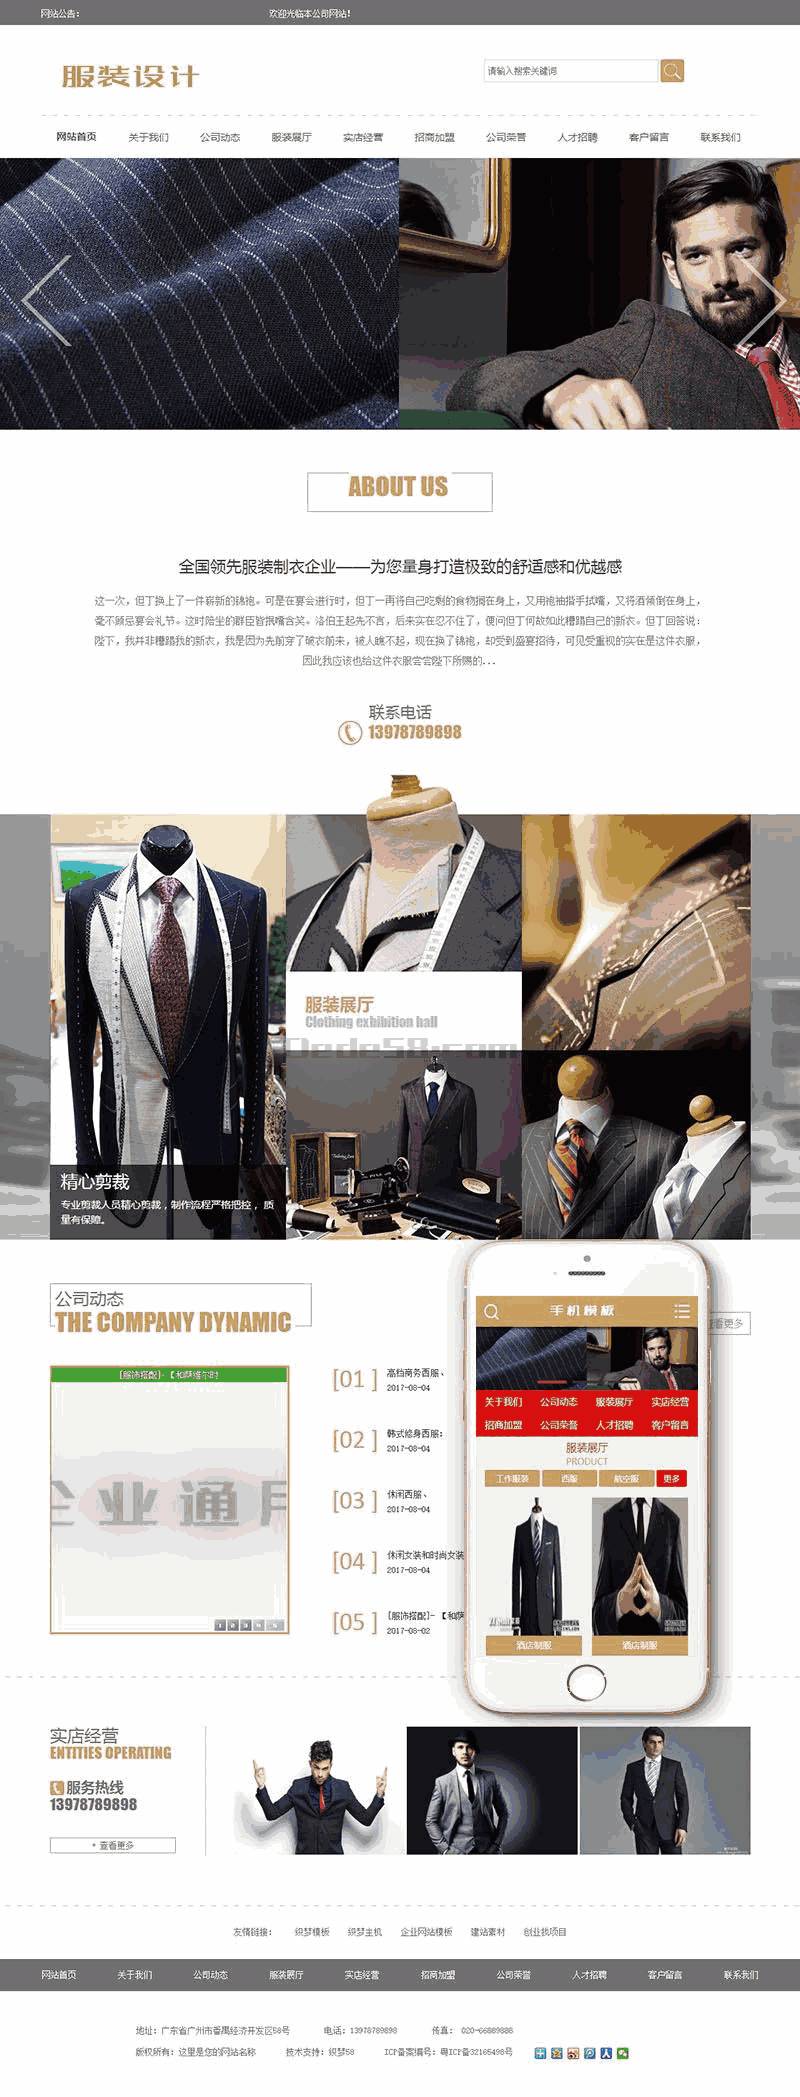 服装设计展示企业网站Wordpress模板带手机端效果图